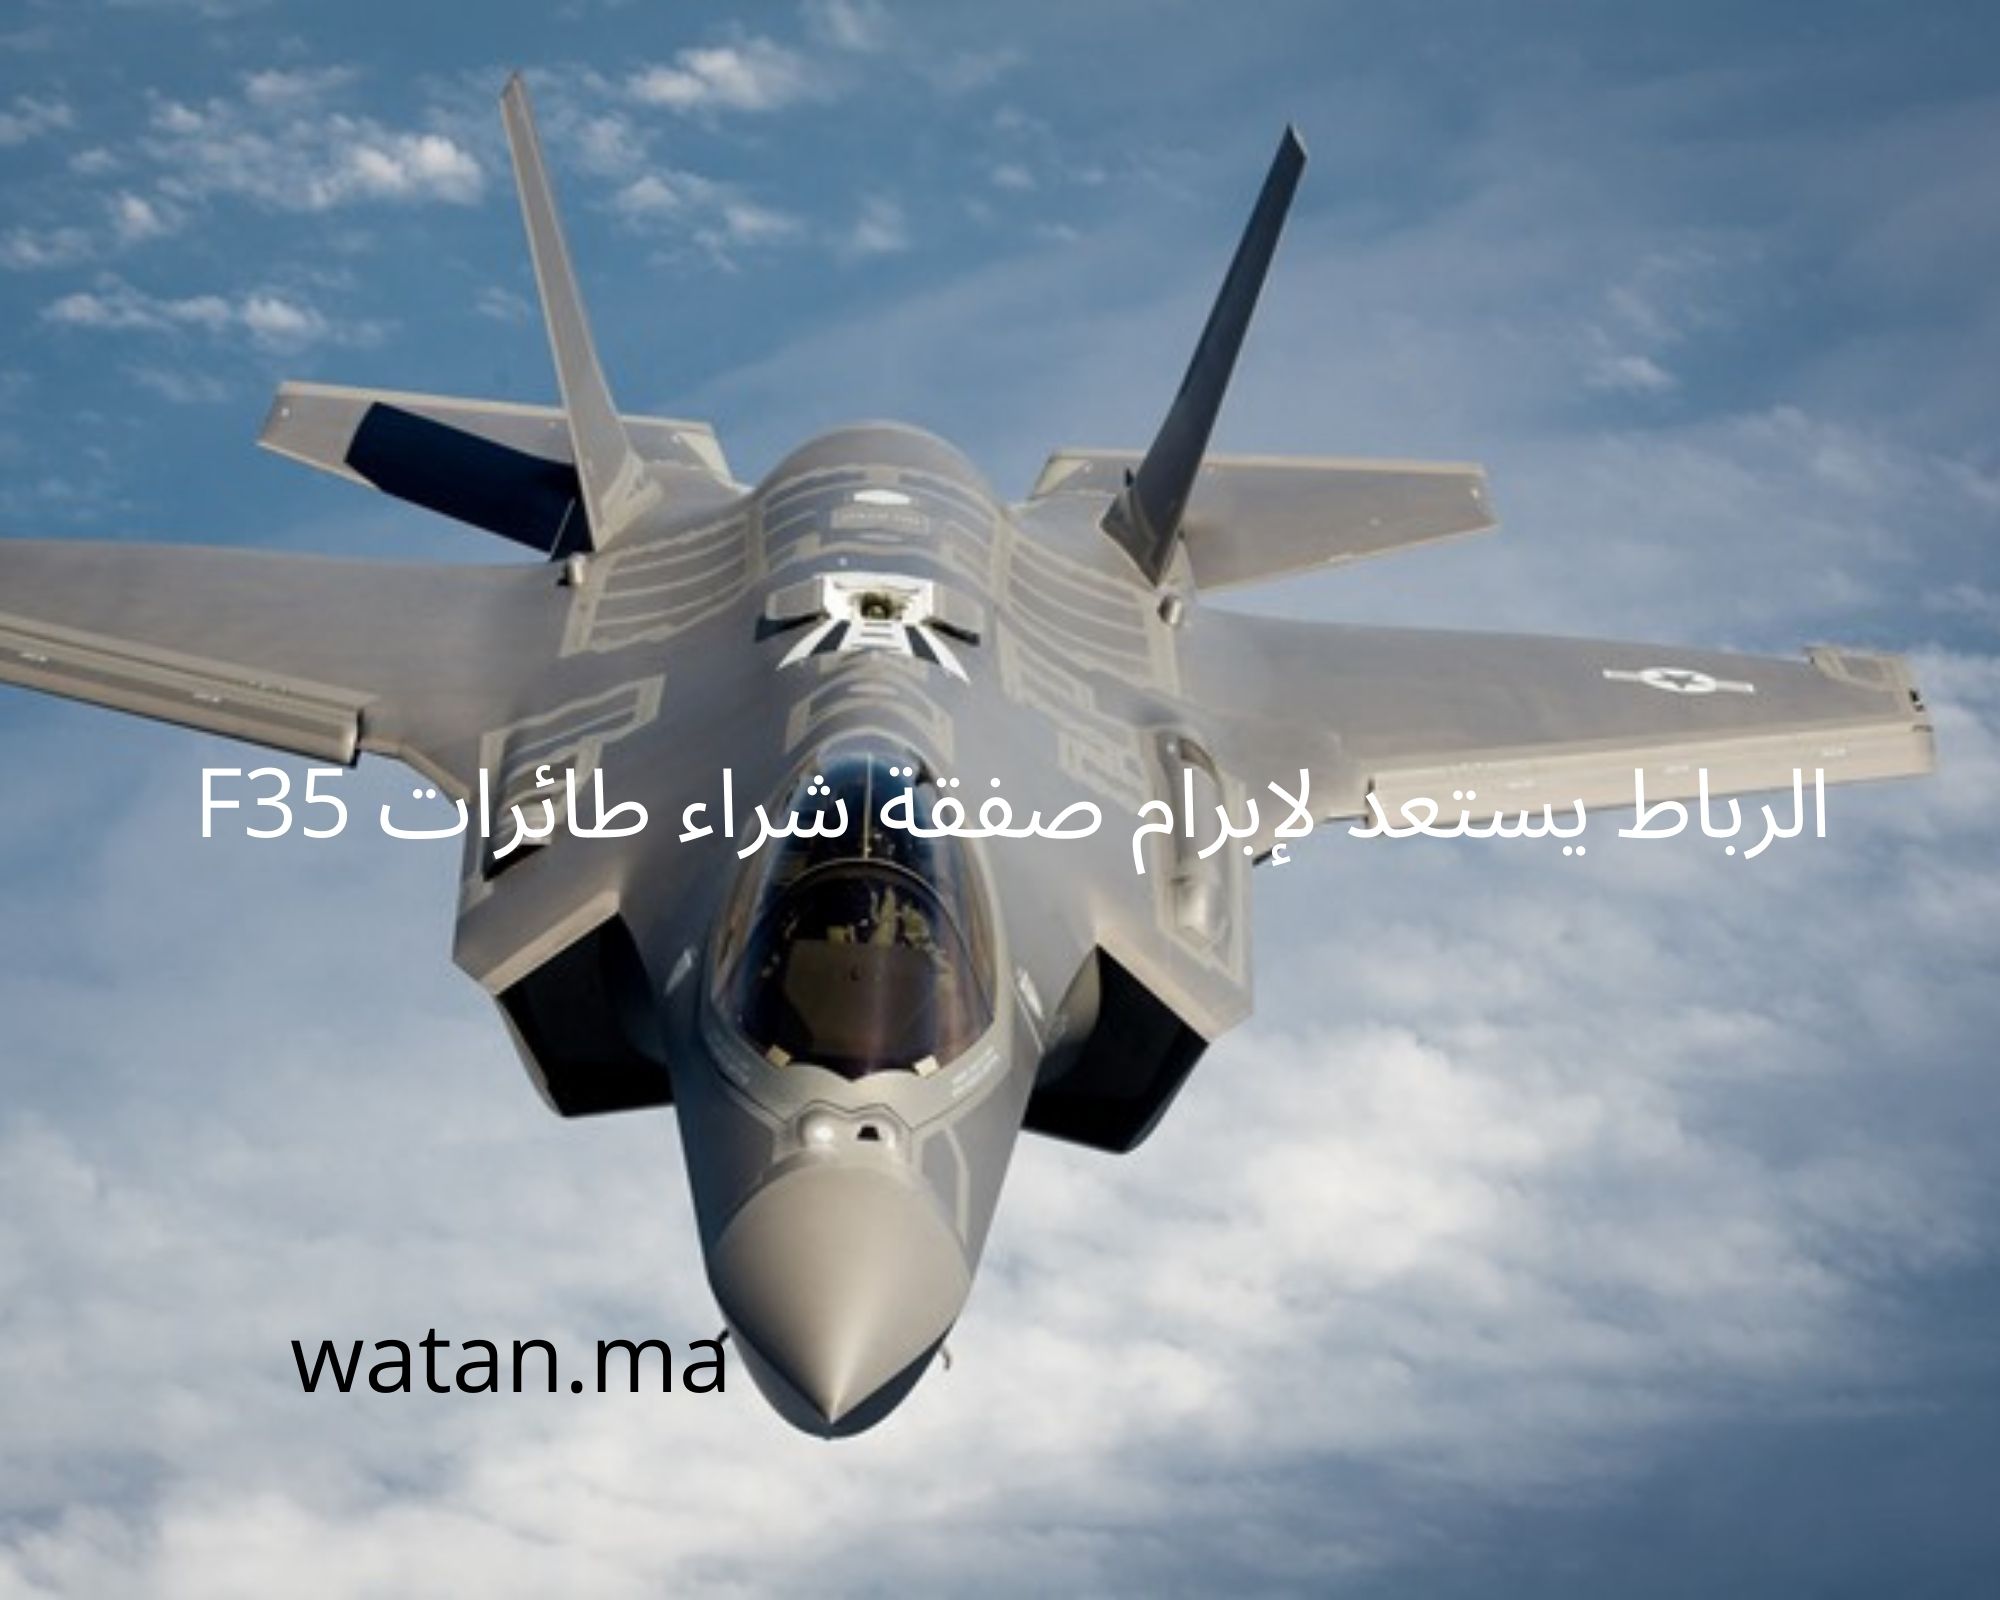 الرباط يستعد لإبرام صفقة شراء طائرات F35 أقوى المقاتلات في العالم